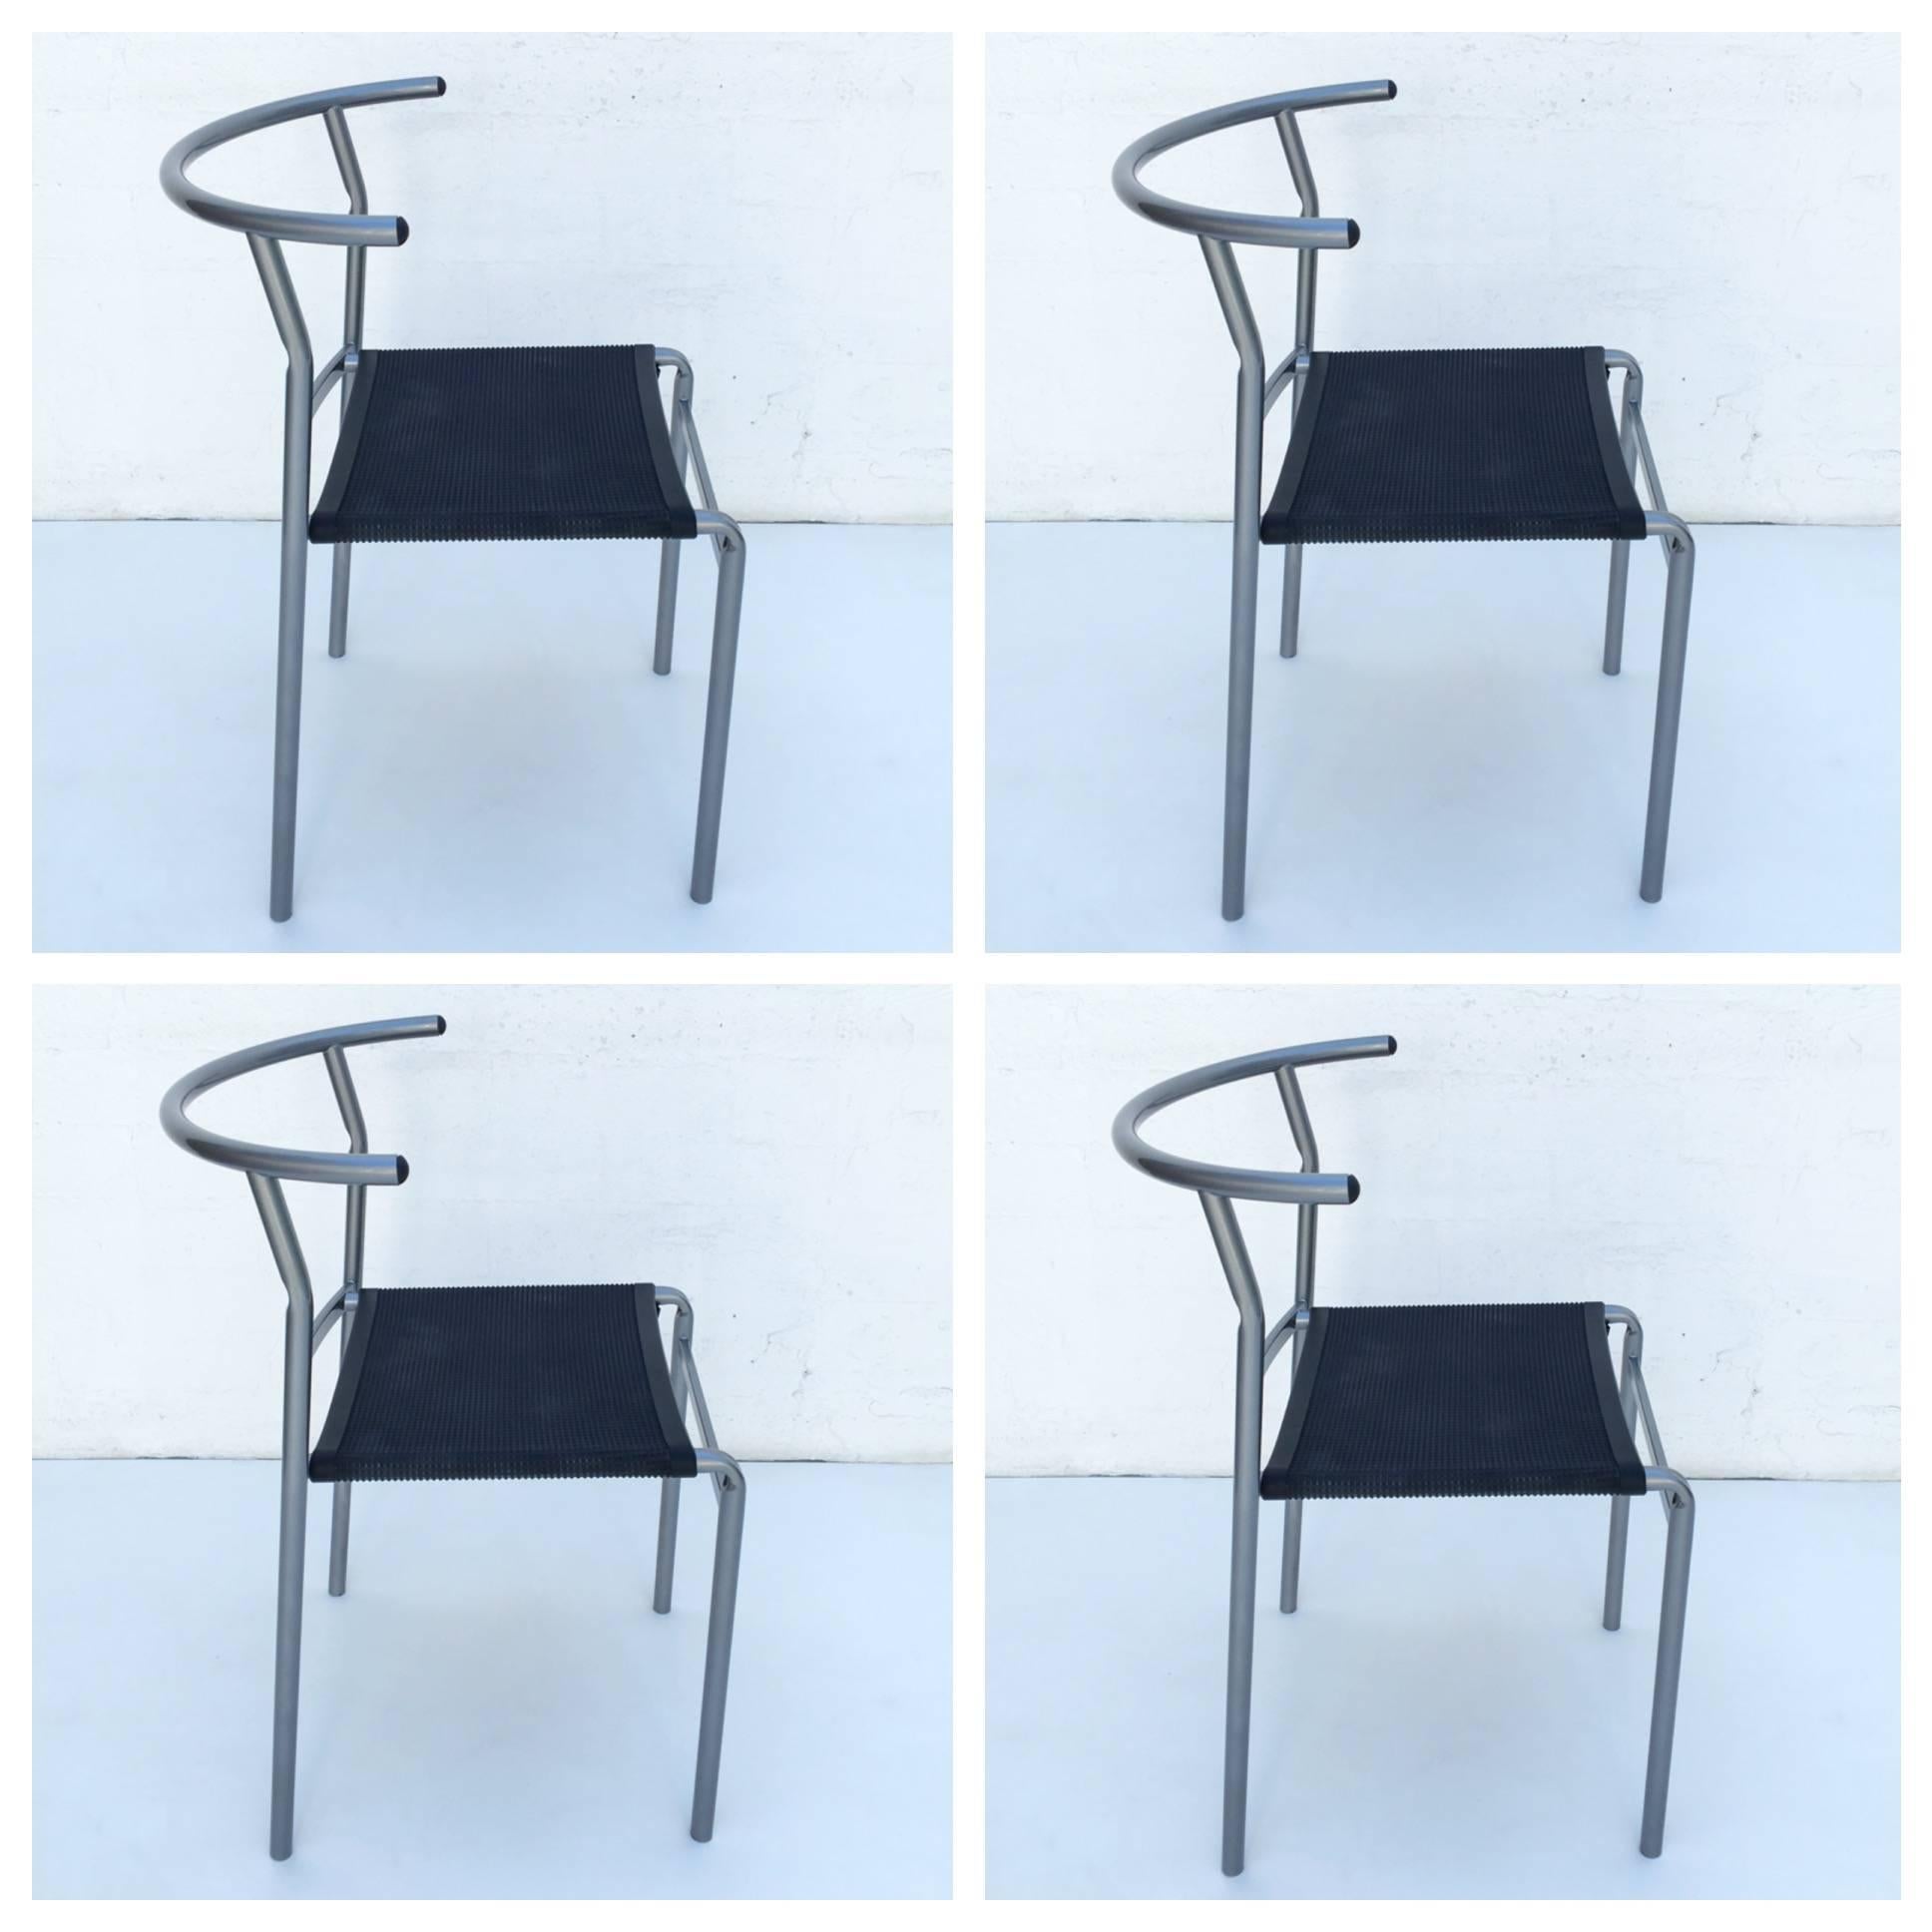 Un ensemble de quatre chaises de café conçues par Philippe Starck en 1983 pour le café Costa. Ils ont été fabriqués par Cerruti Baleri, Italie, en 1984.
Le siège est en caoutchouc épais et le cadre est en tube d'acier recouvert de poudre gris